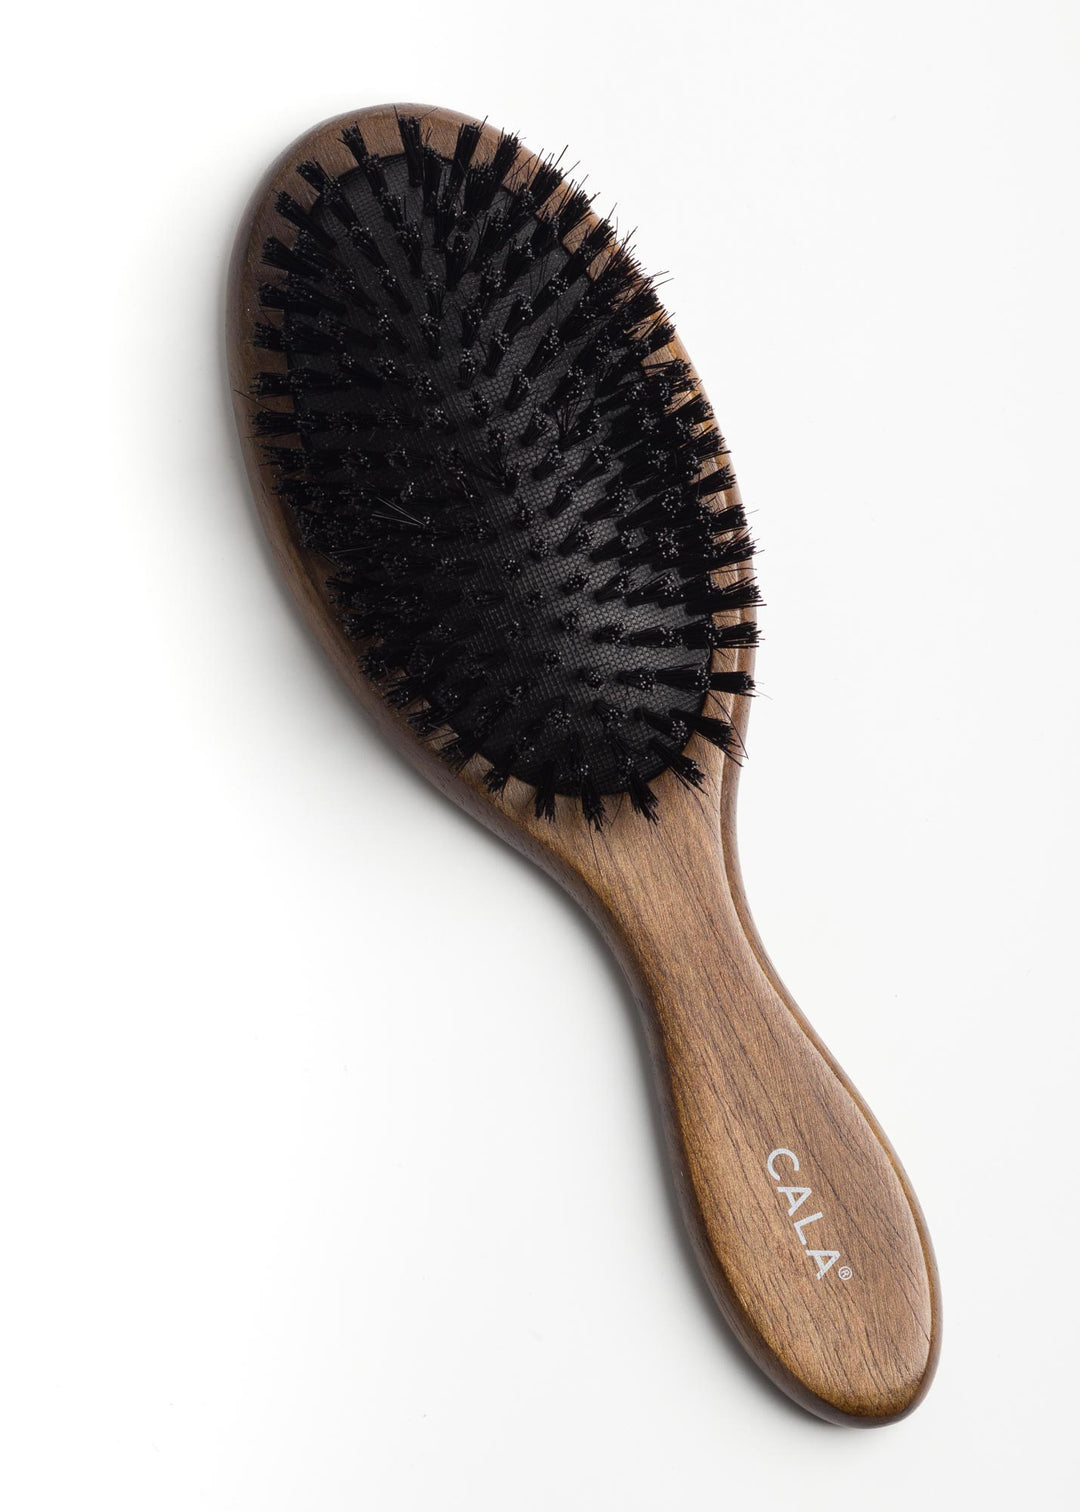 Cepillo de pelo de cerdas de jabalí de bambú oscuro